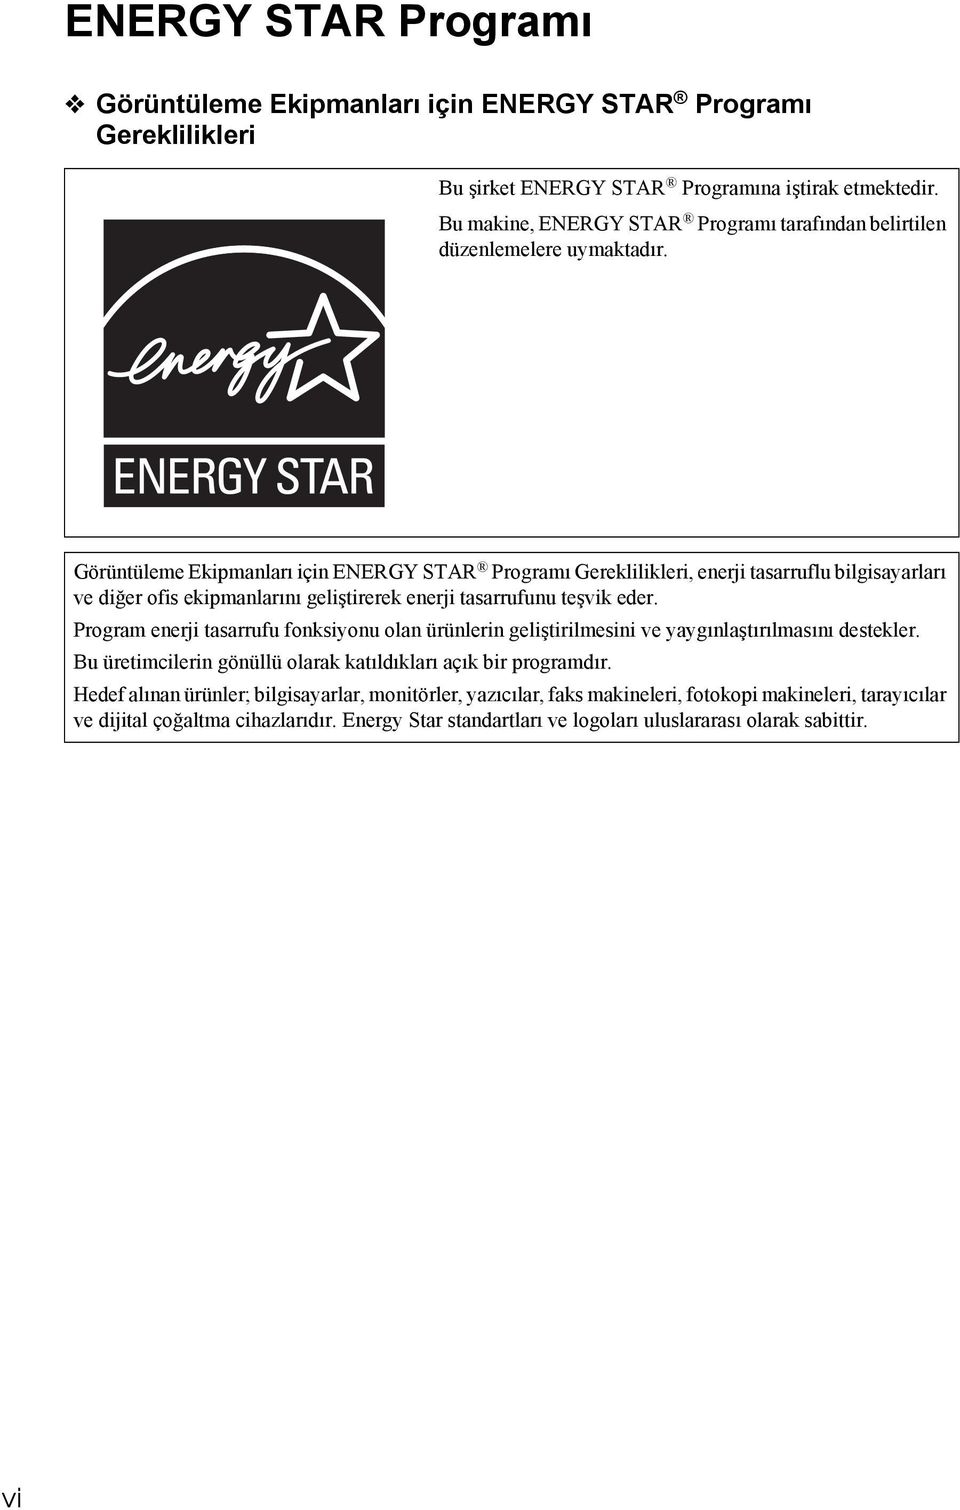 Görüntüleme Ekipmanları için ENERGY STAR Programı Gereklilikleri, enerji tasarruflu bilgisayarları ve diğer ofis ekipmanlarını geliştirerek enerji tasarrufunu teşvik eder.